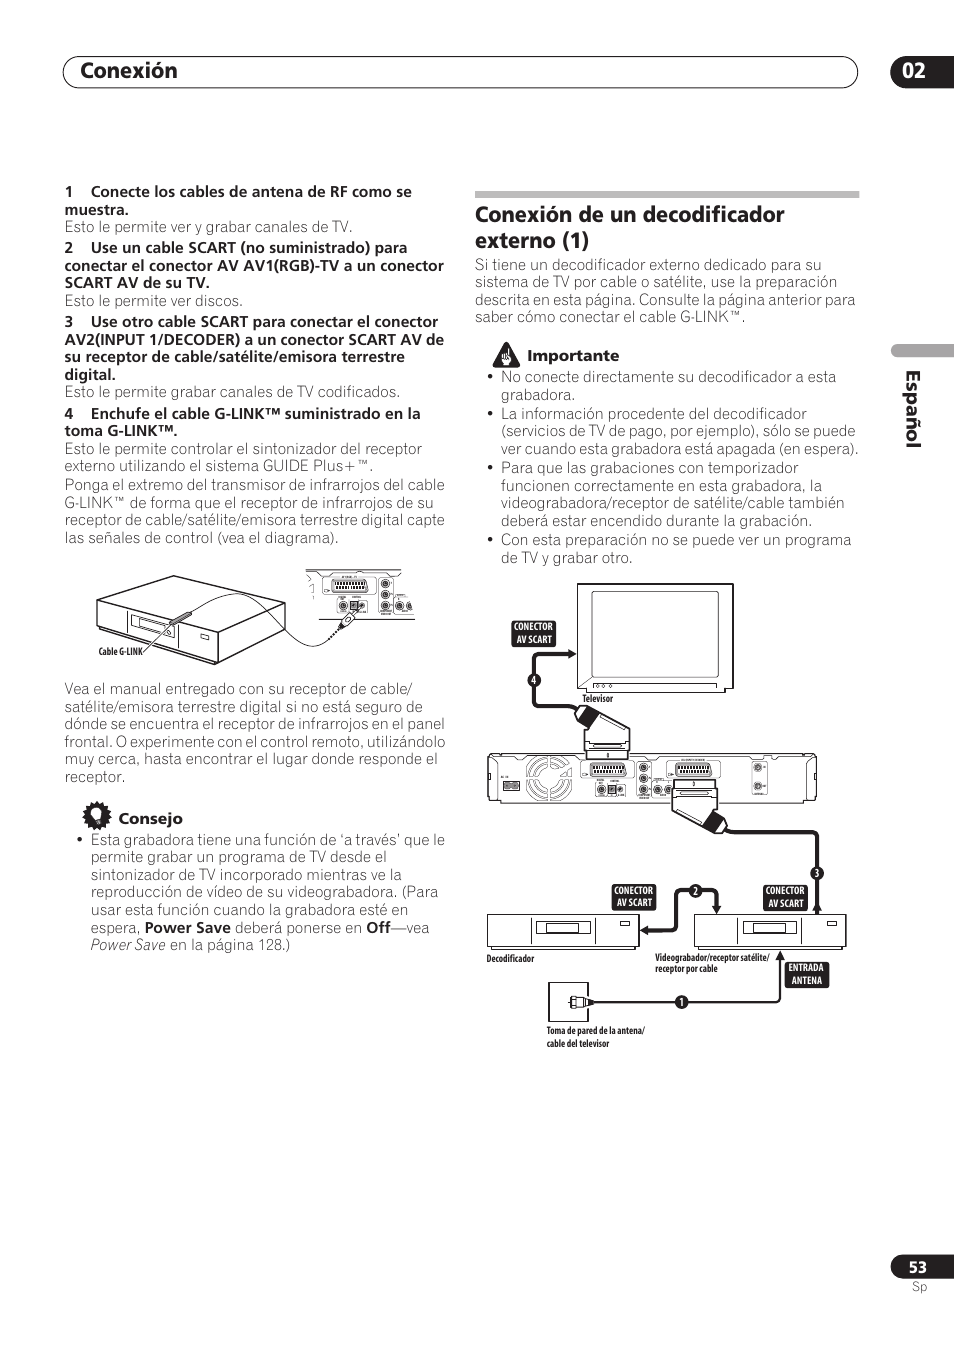 Conexión 02, Conexión de un decodificador externo (1), Español | Pioneer RCS-404H Manual del usuario | Página 53 / 152